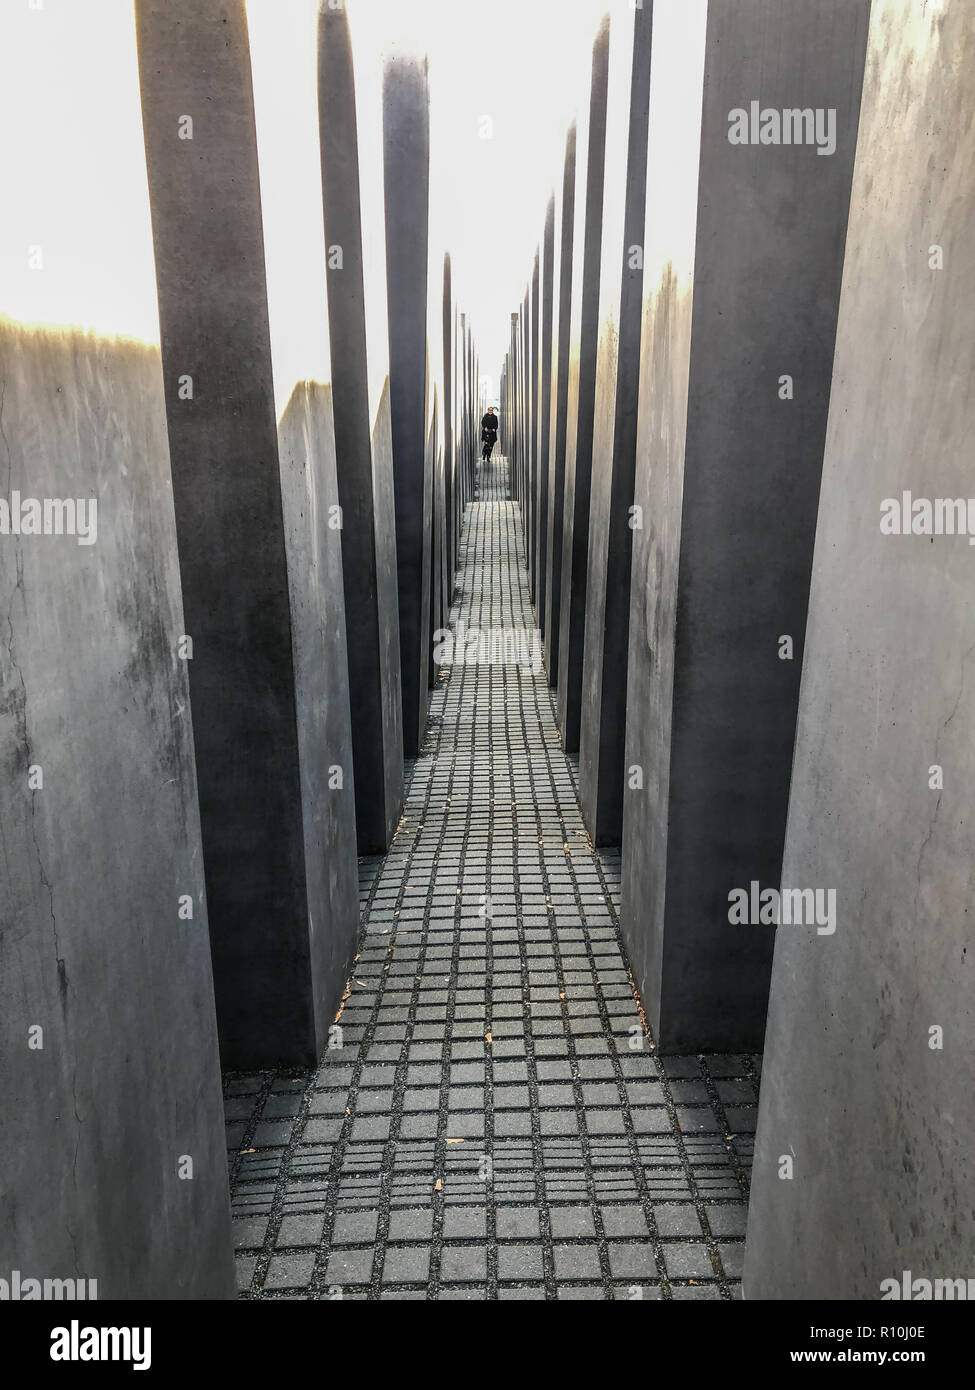 Berlin, Allemagne - novembre 2018 : l'intérieur du Mémorial aux Juifs assassinés d'Europe Hocolcaust alias memorial à Berlin, Allemagne Banque D'Images